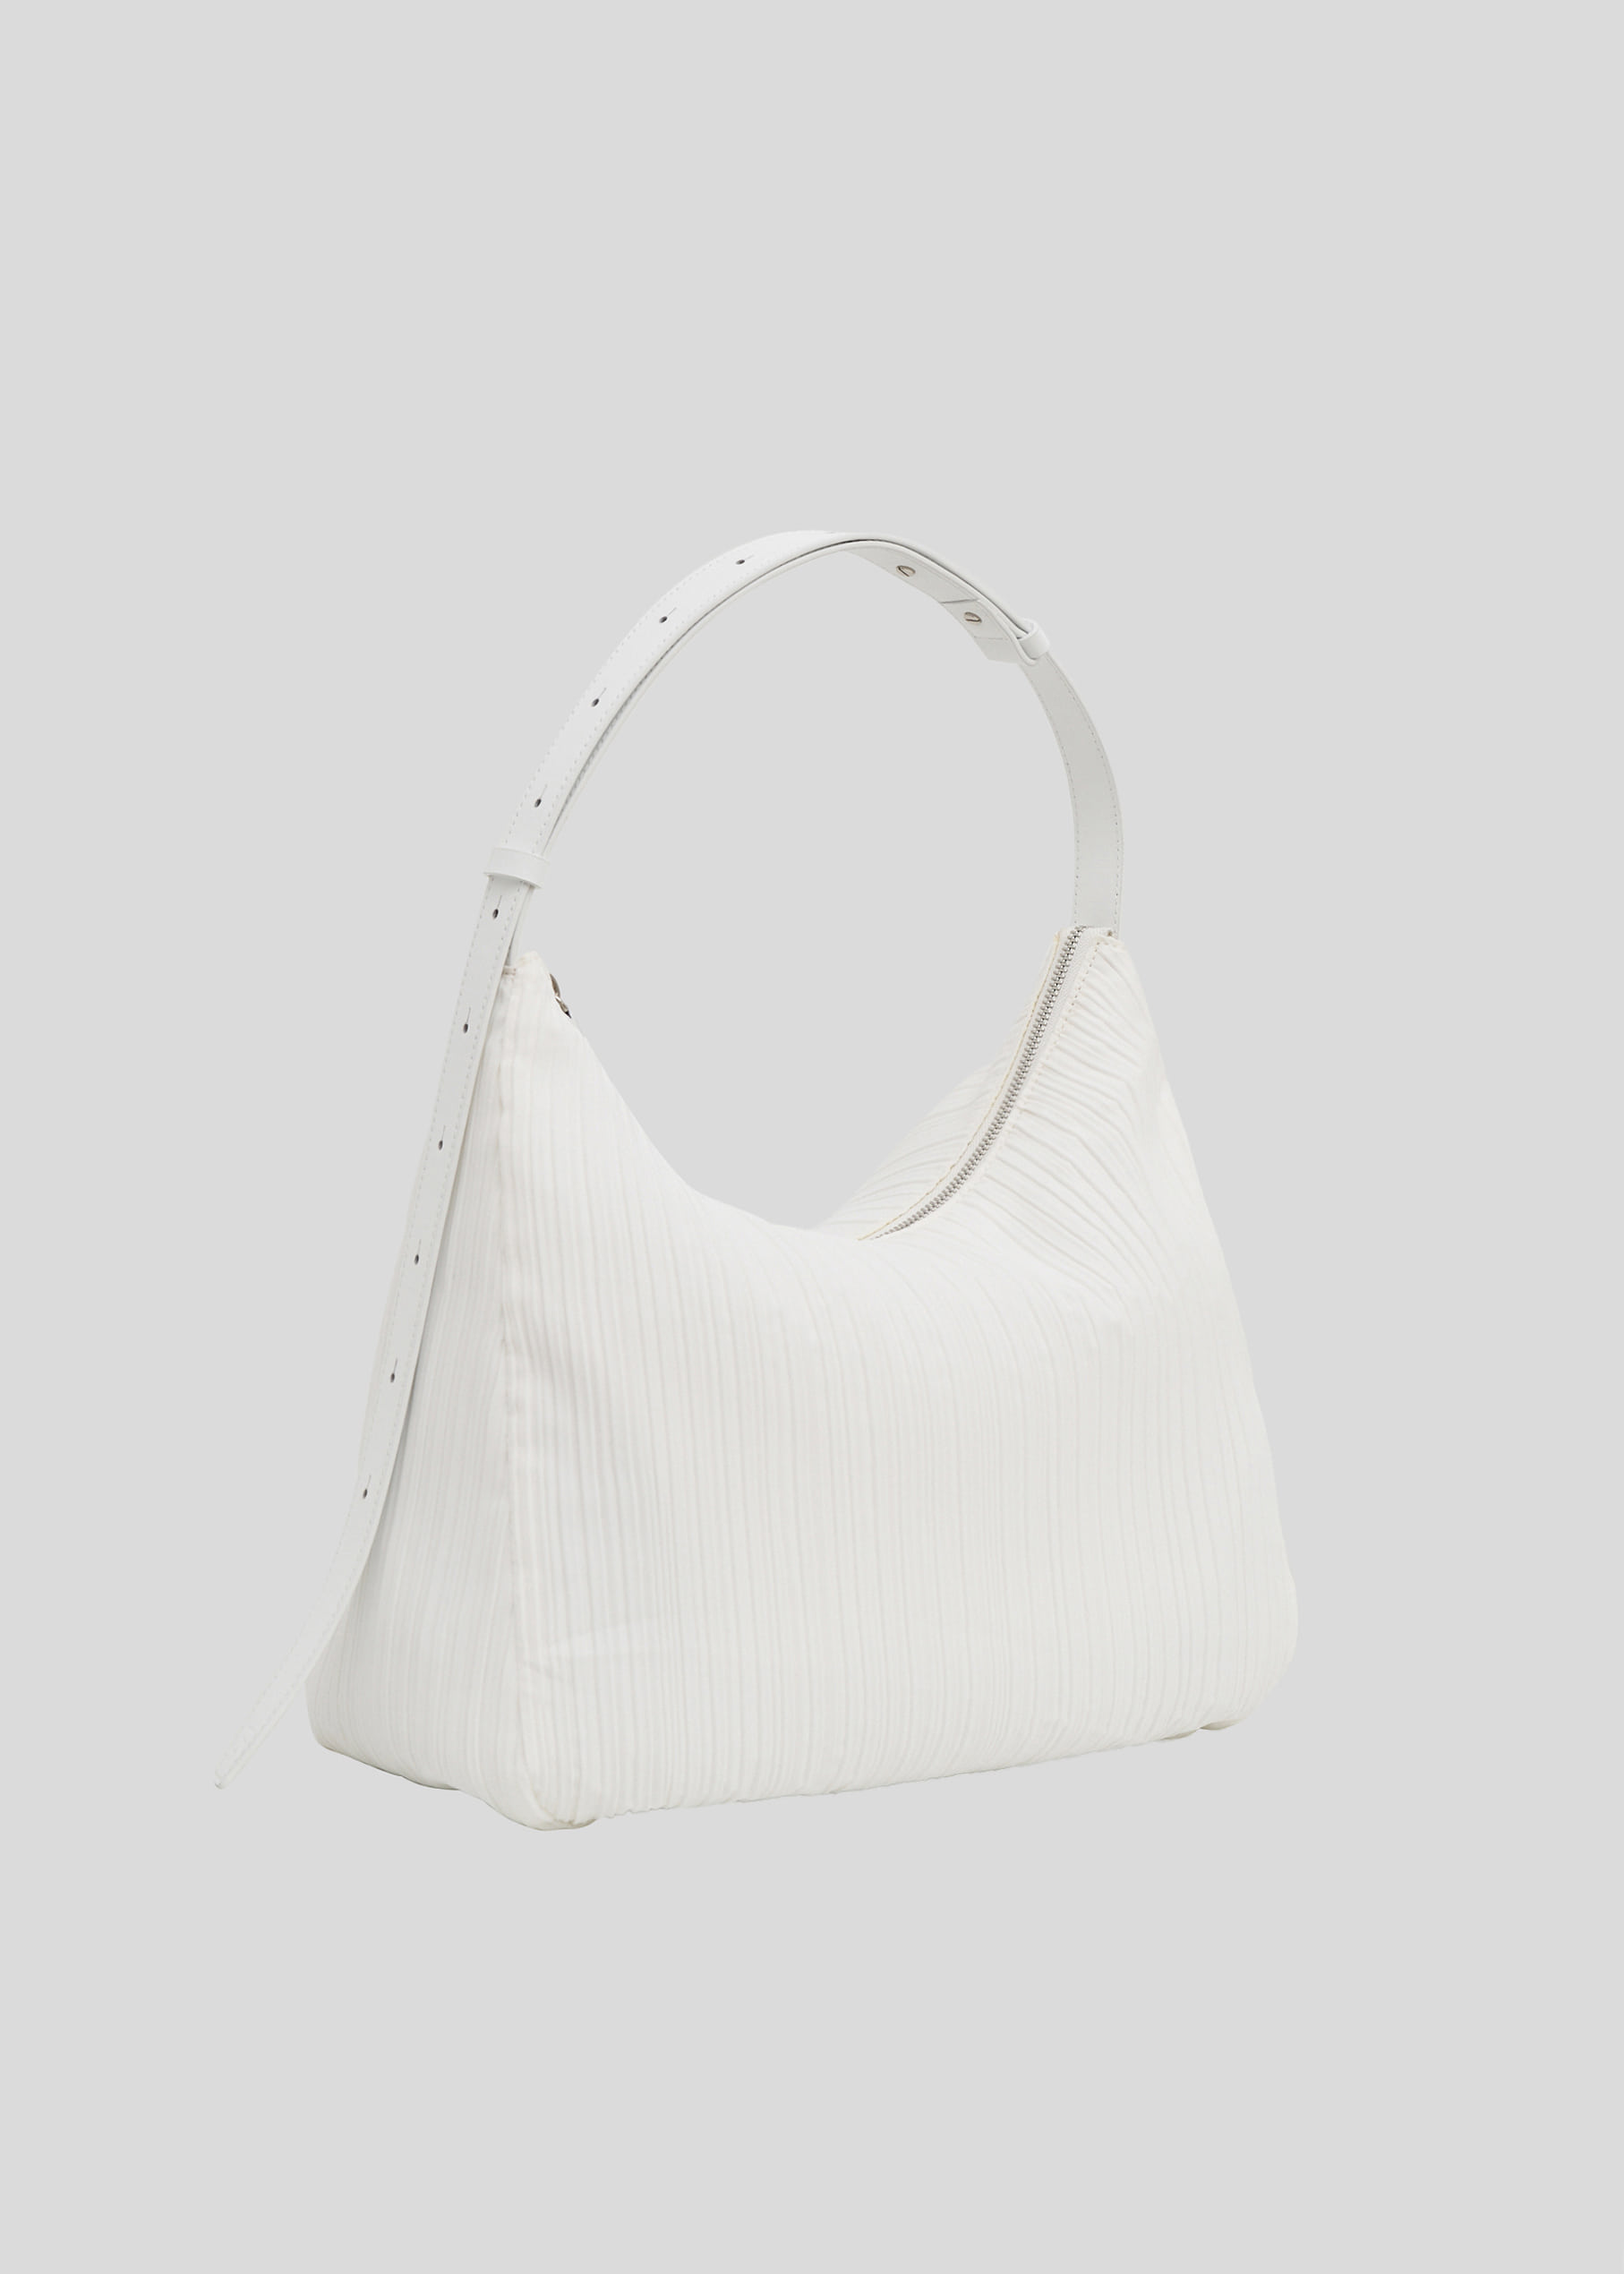 블루브릭,[exclusive] Pleats bag (white)